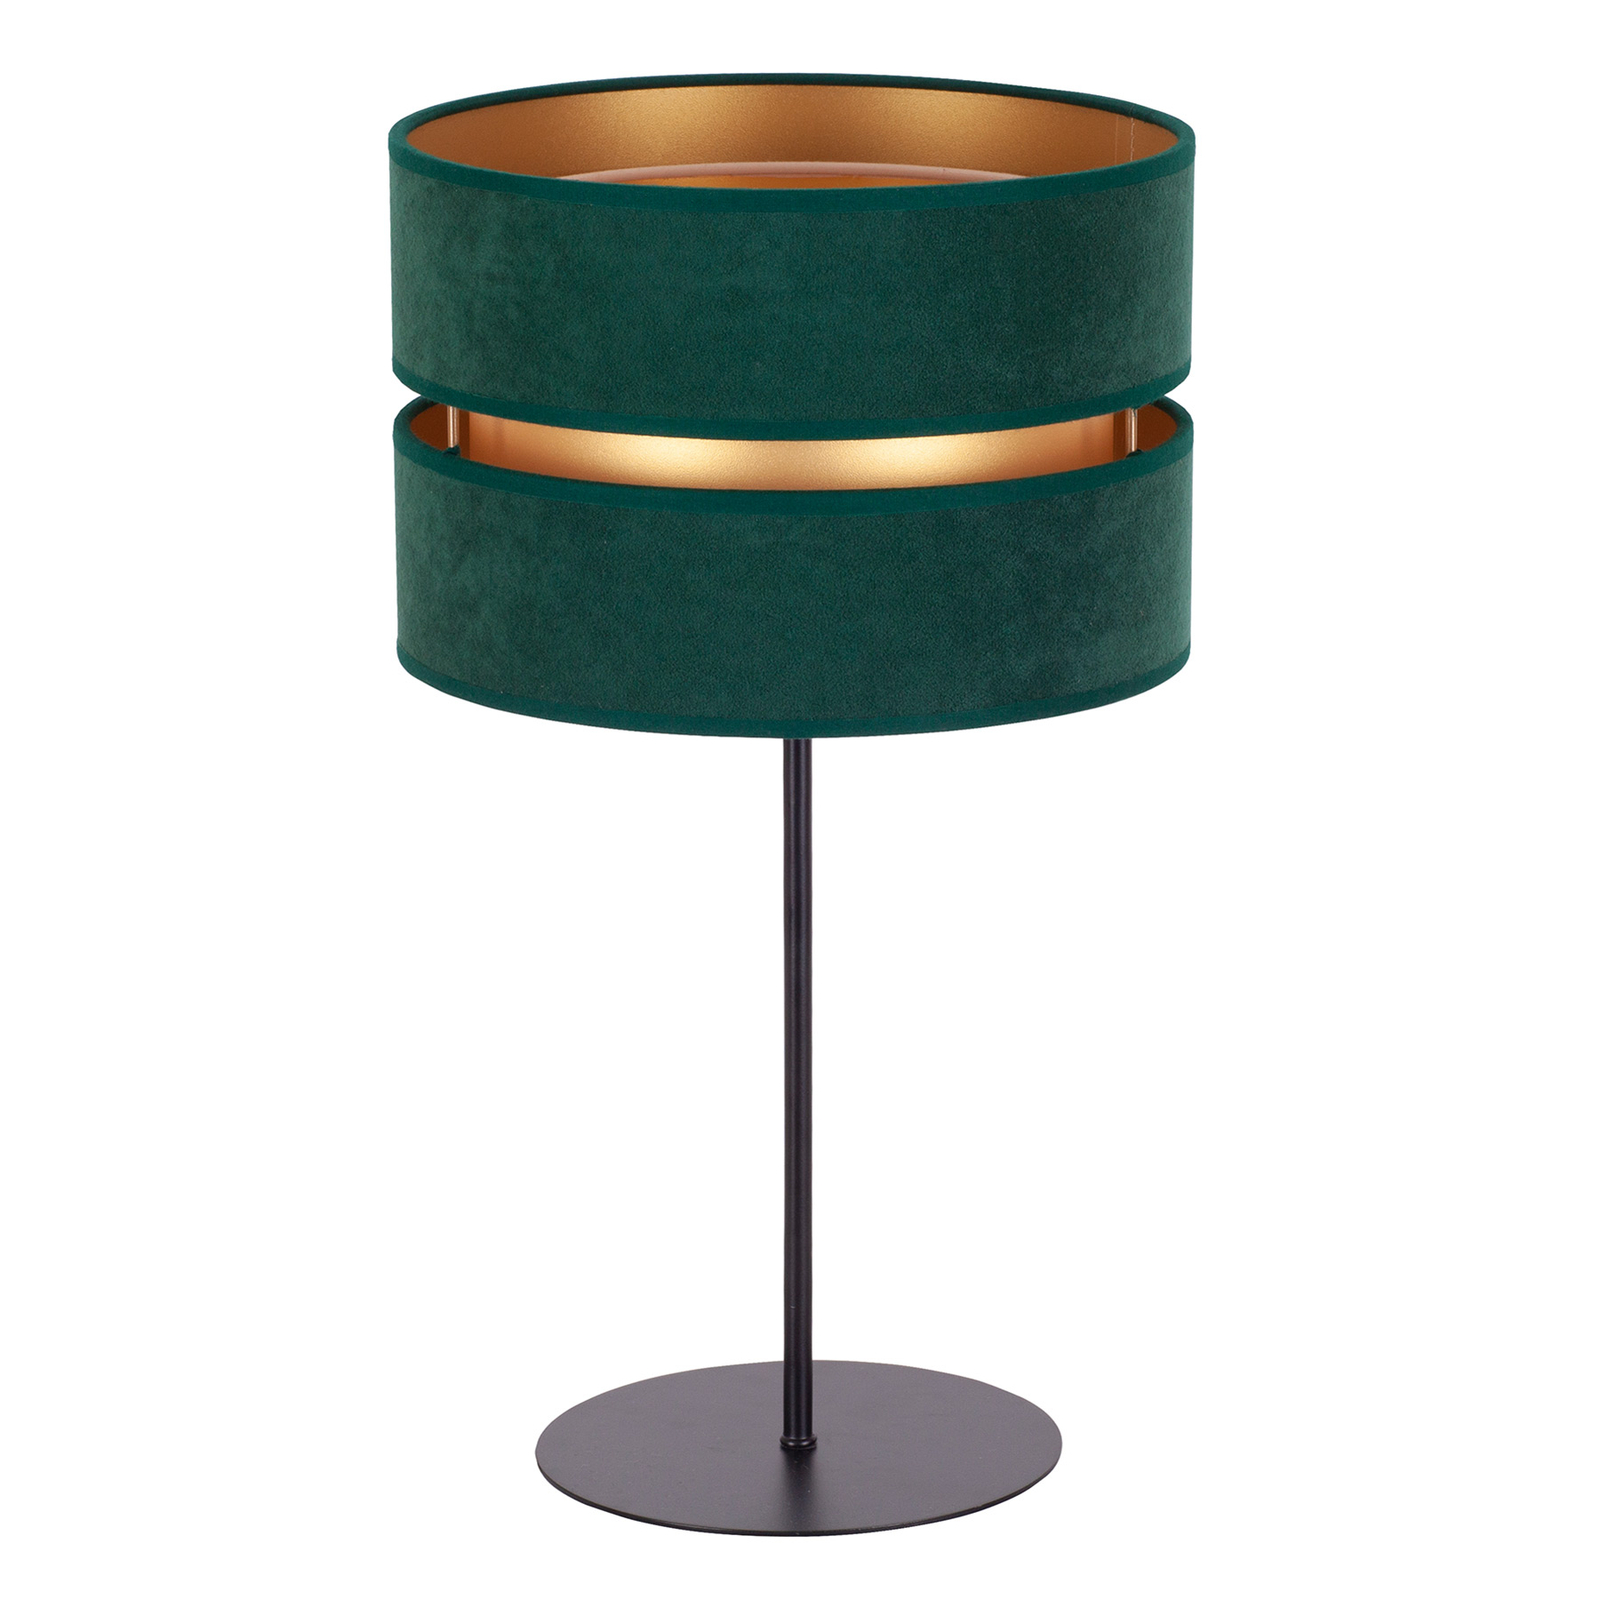 Duo-pöytälamppu vihreä/kulta, korkeus 50 cm